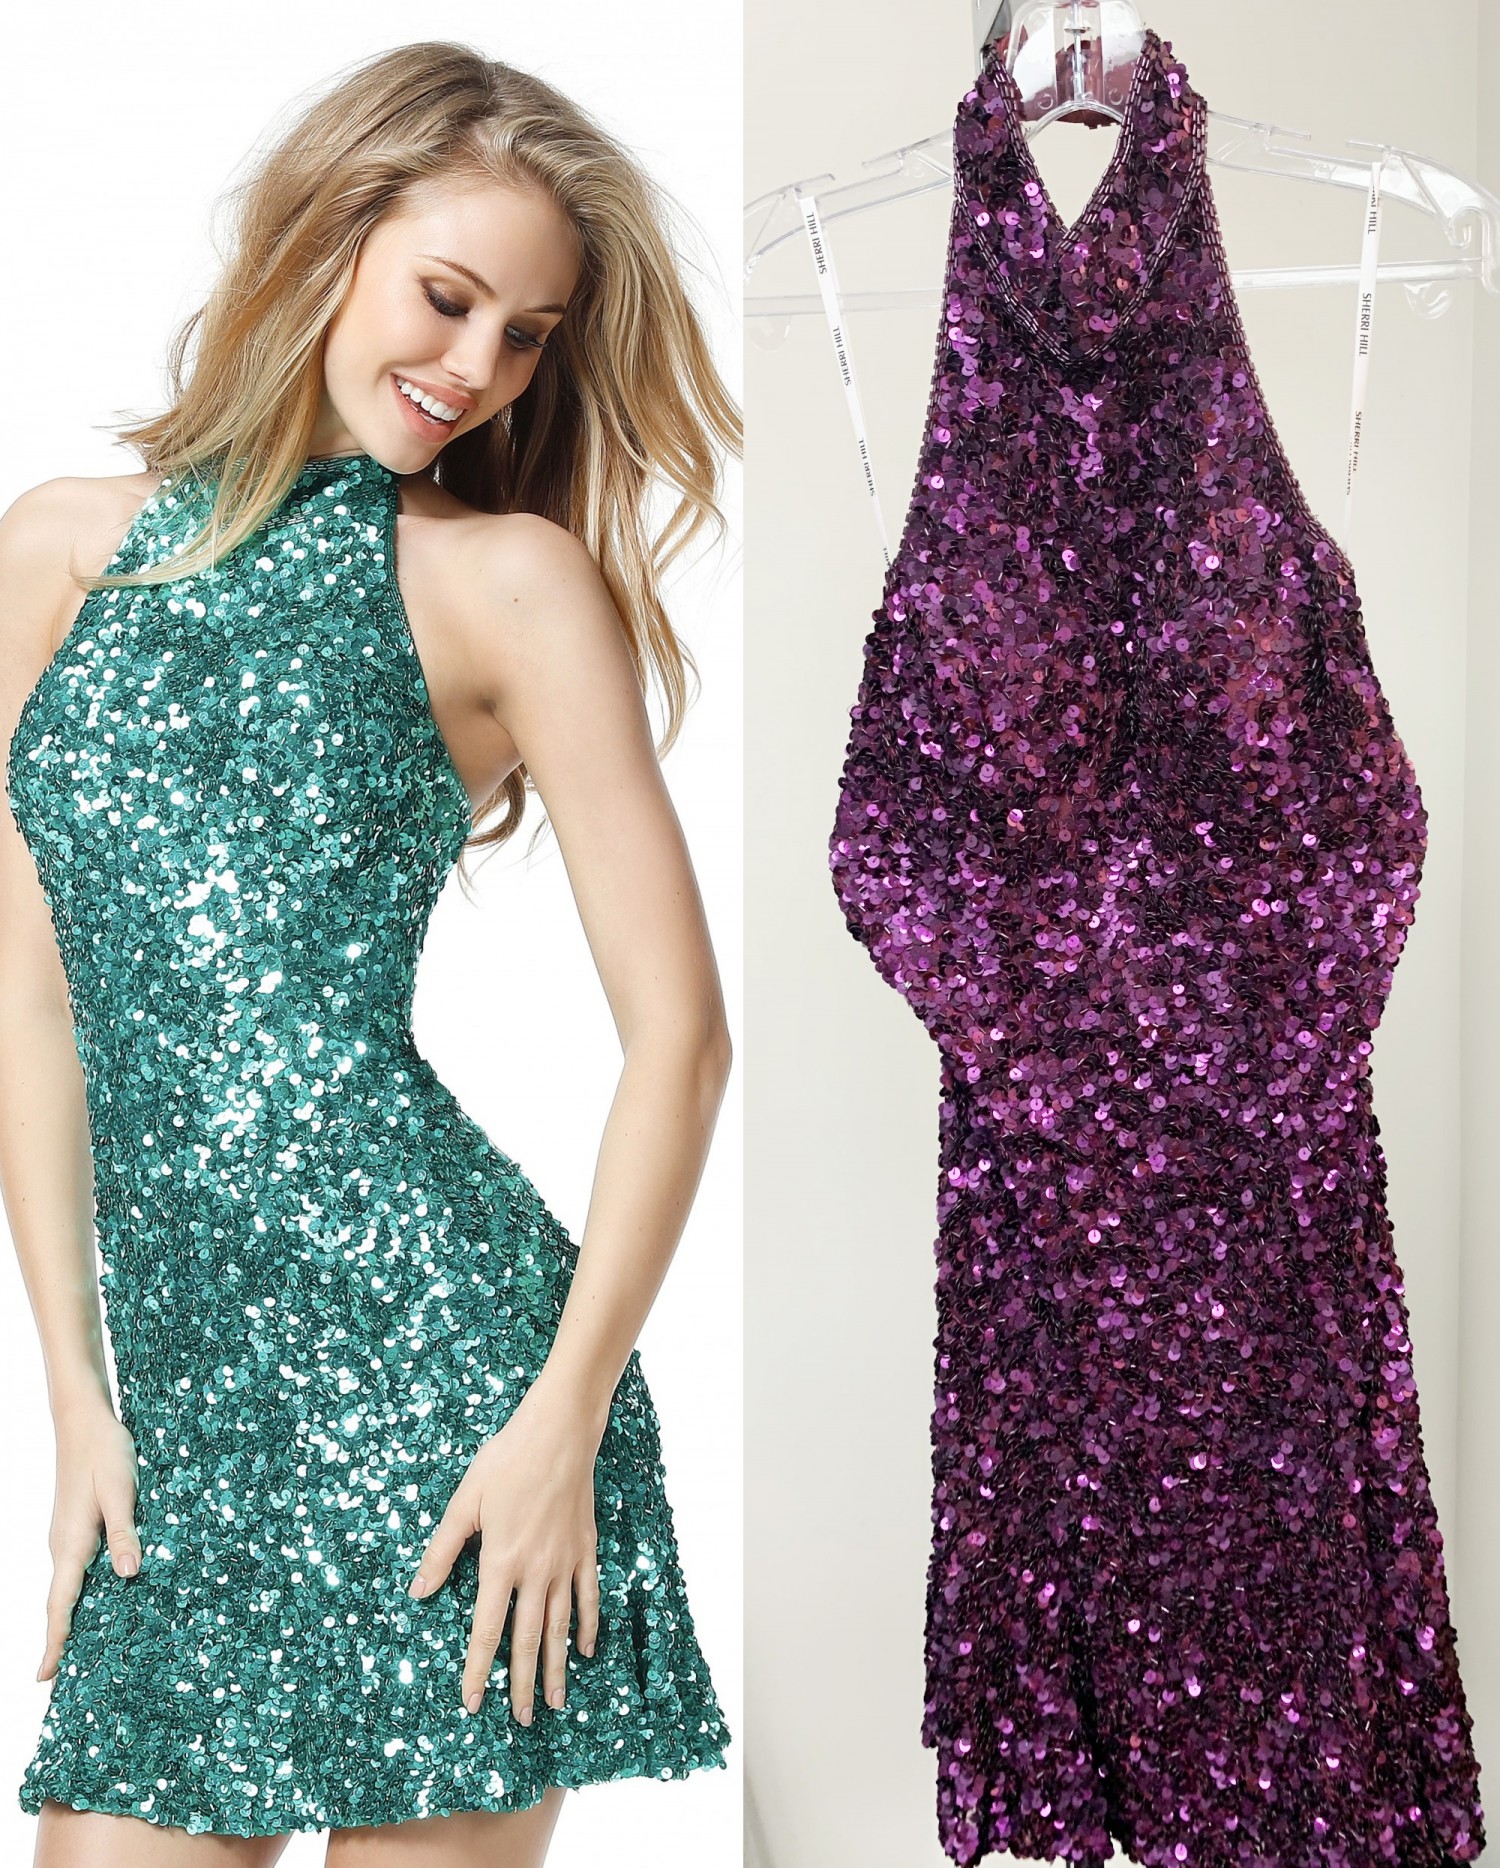 Sherri Hill 51346 Vibrant Sequin Halter Dress with Open Back